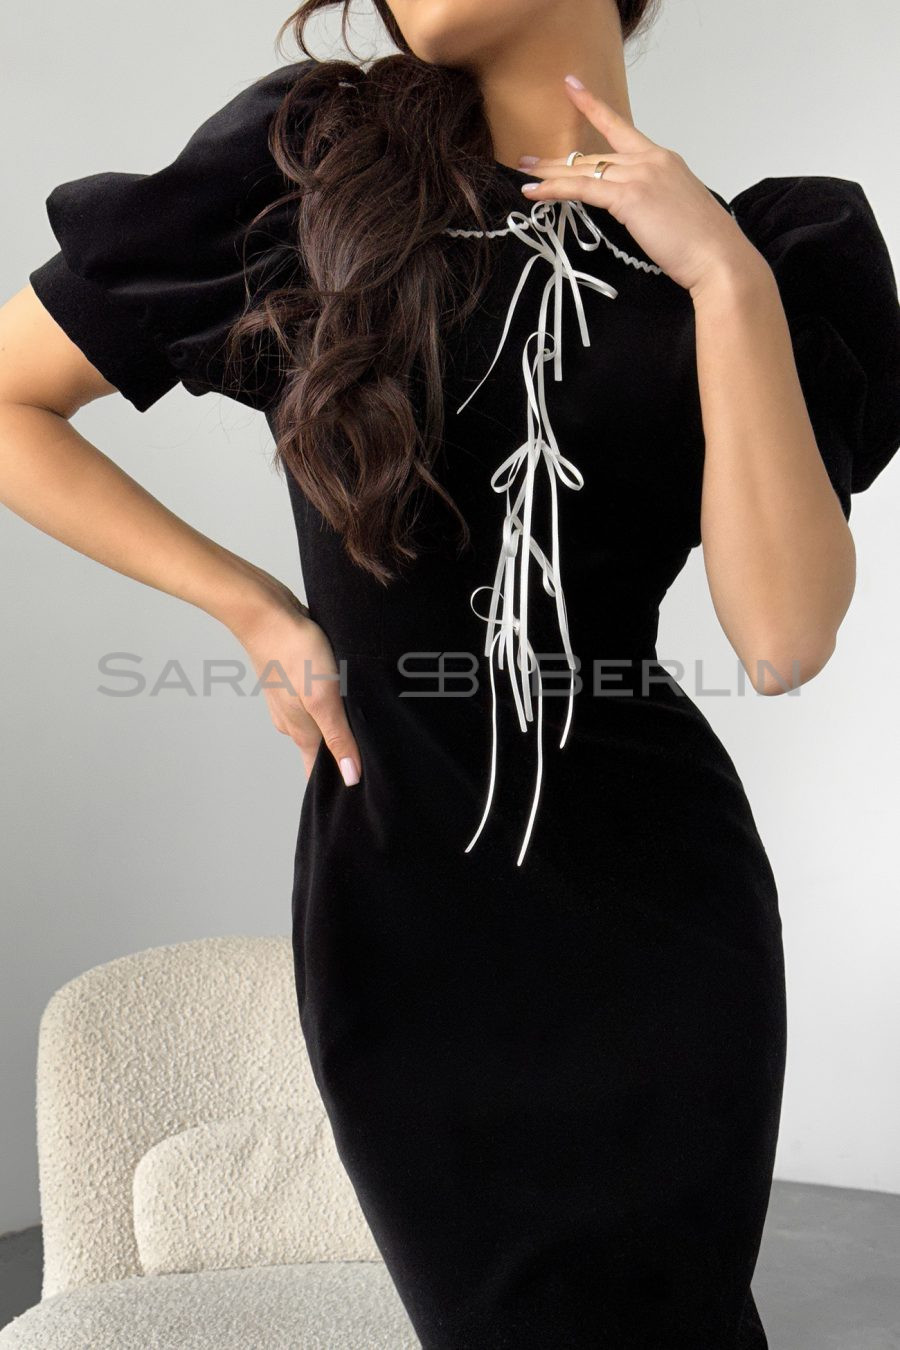 Italian velvet silhouette dress with white bows